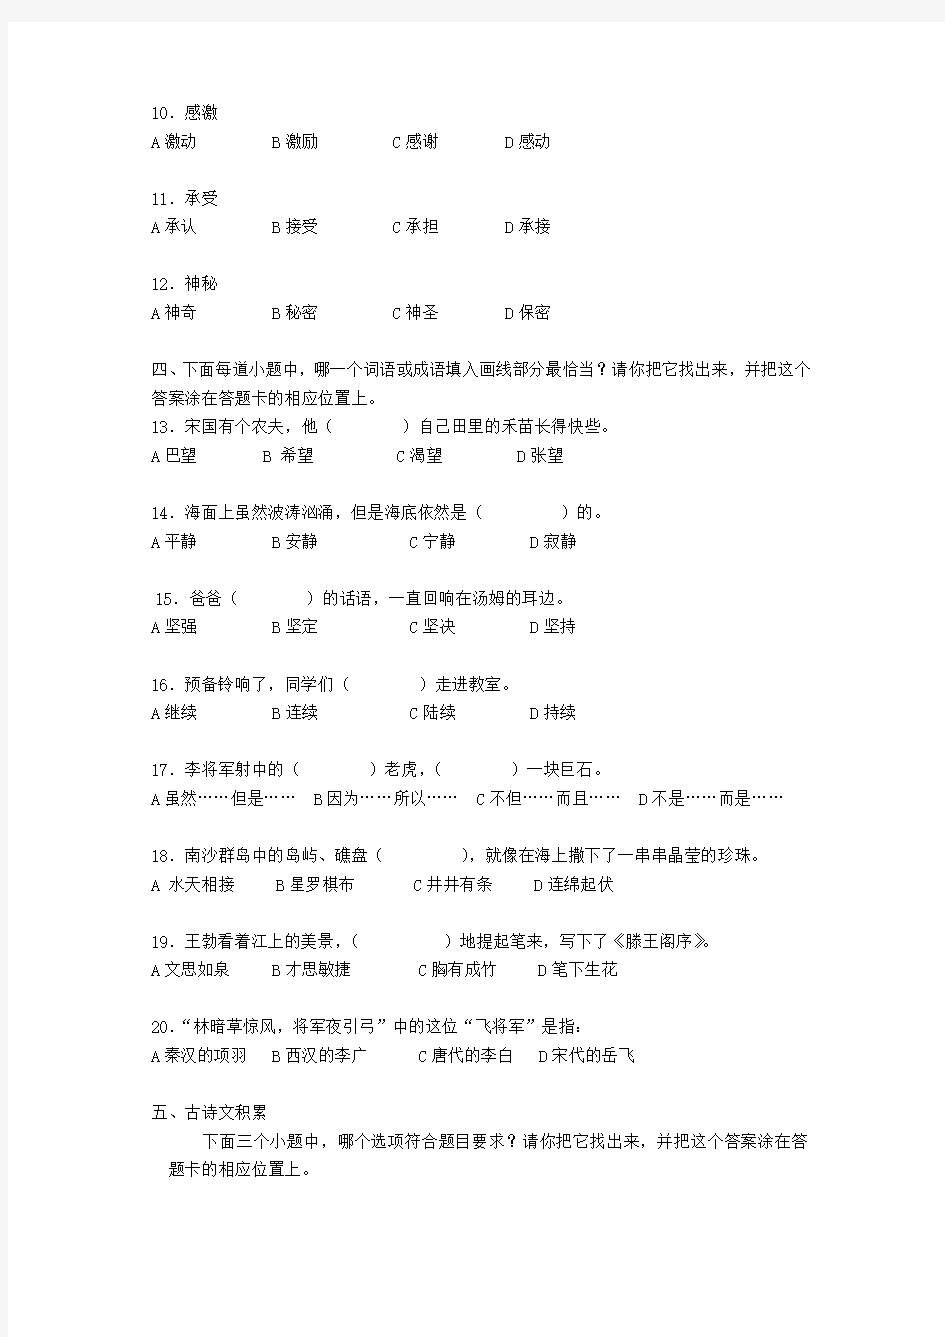 江苏省小学三年级语文质量抽测试卷及答题卡三